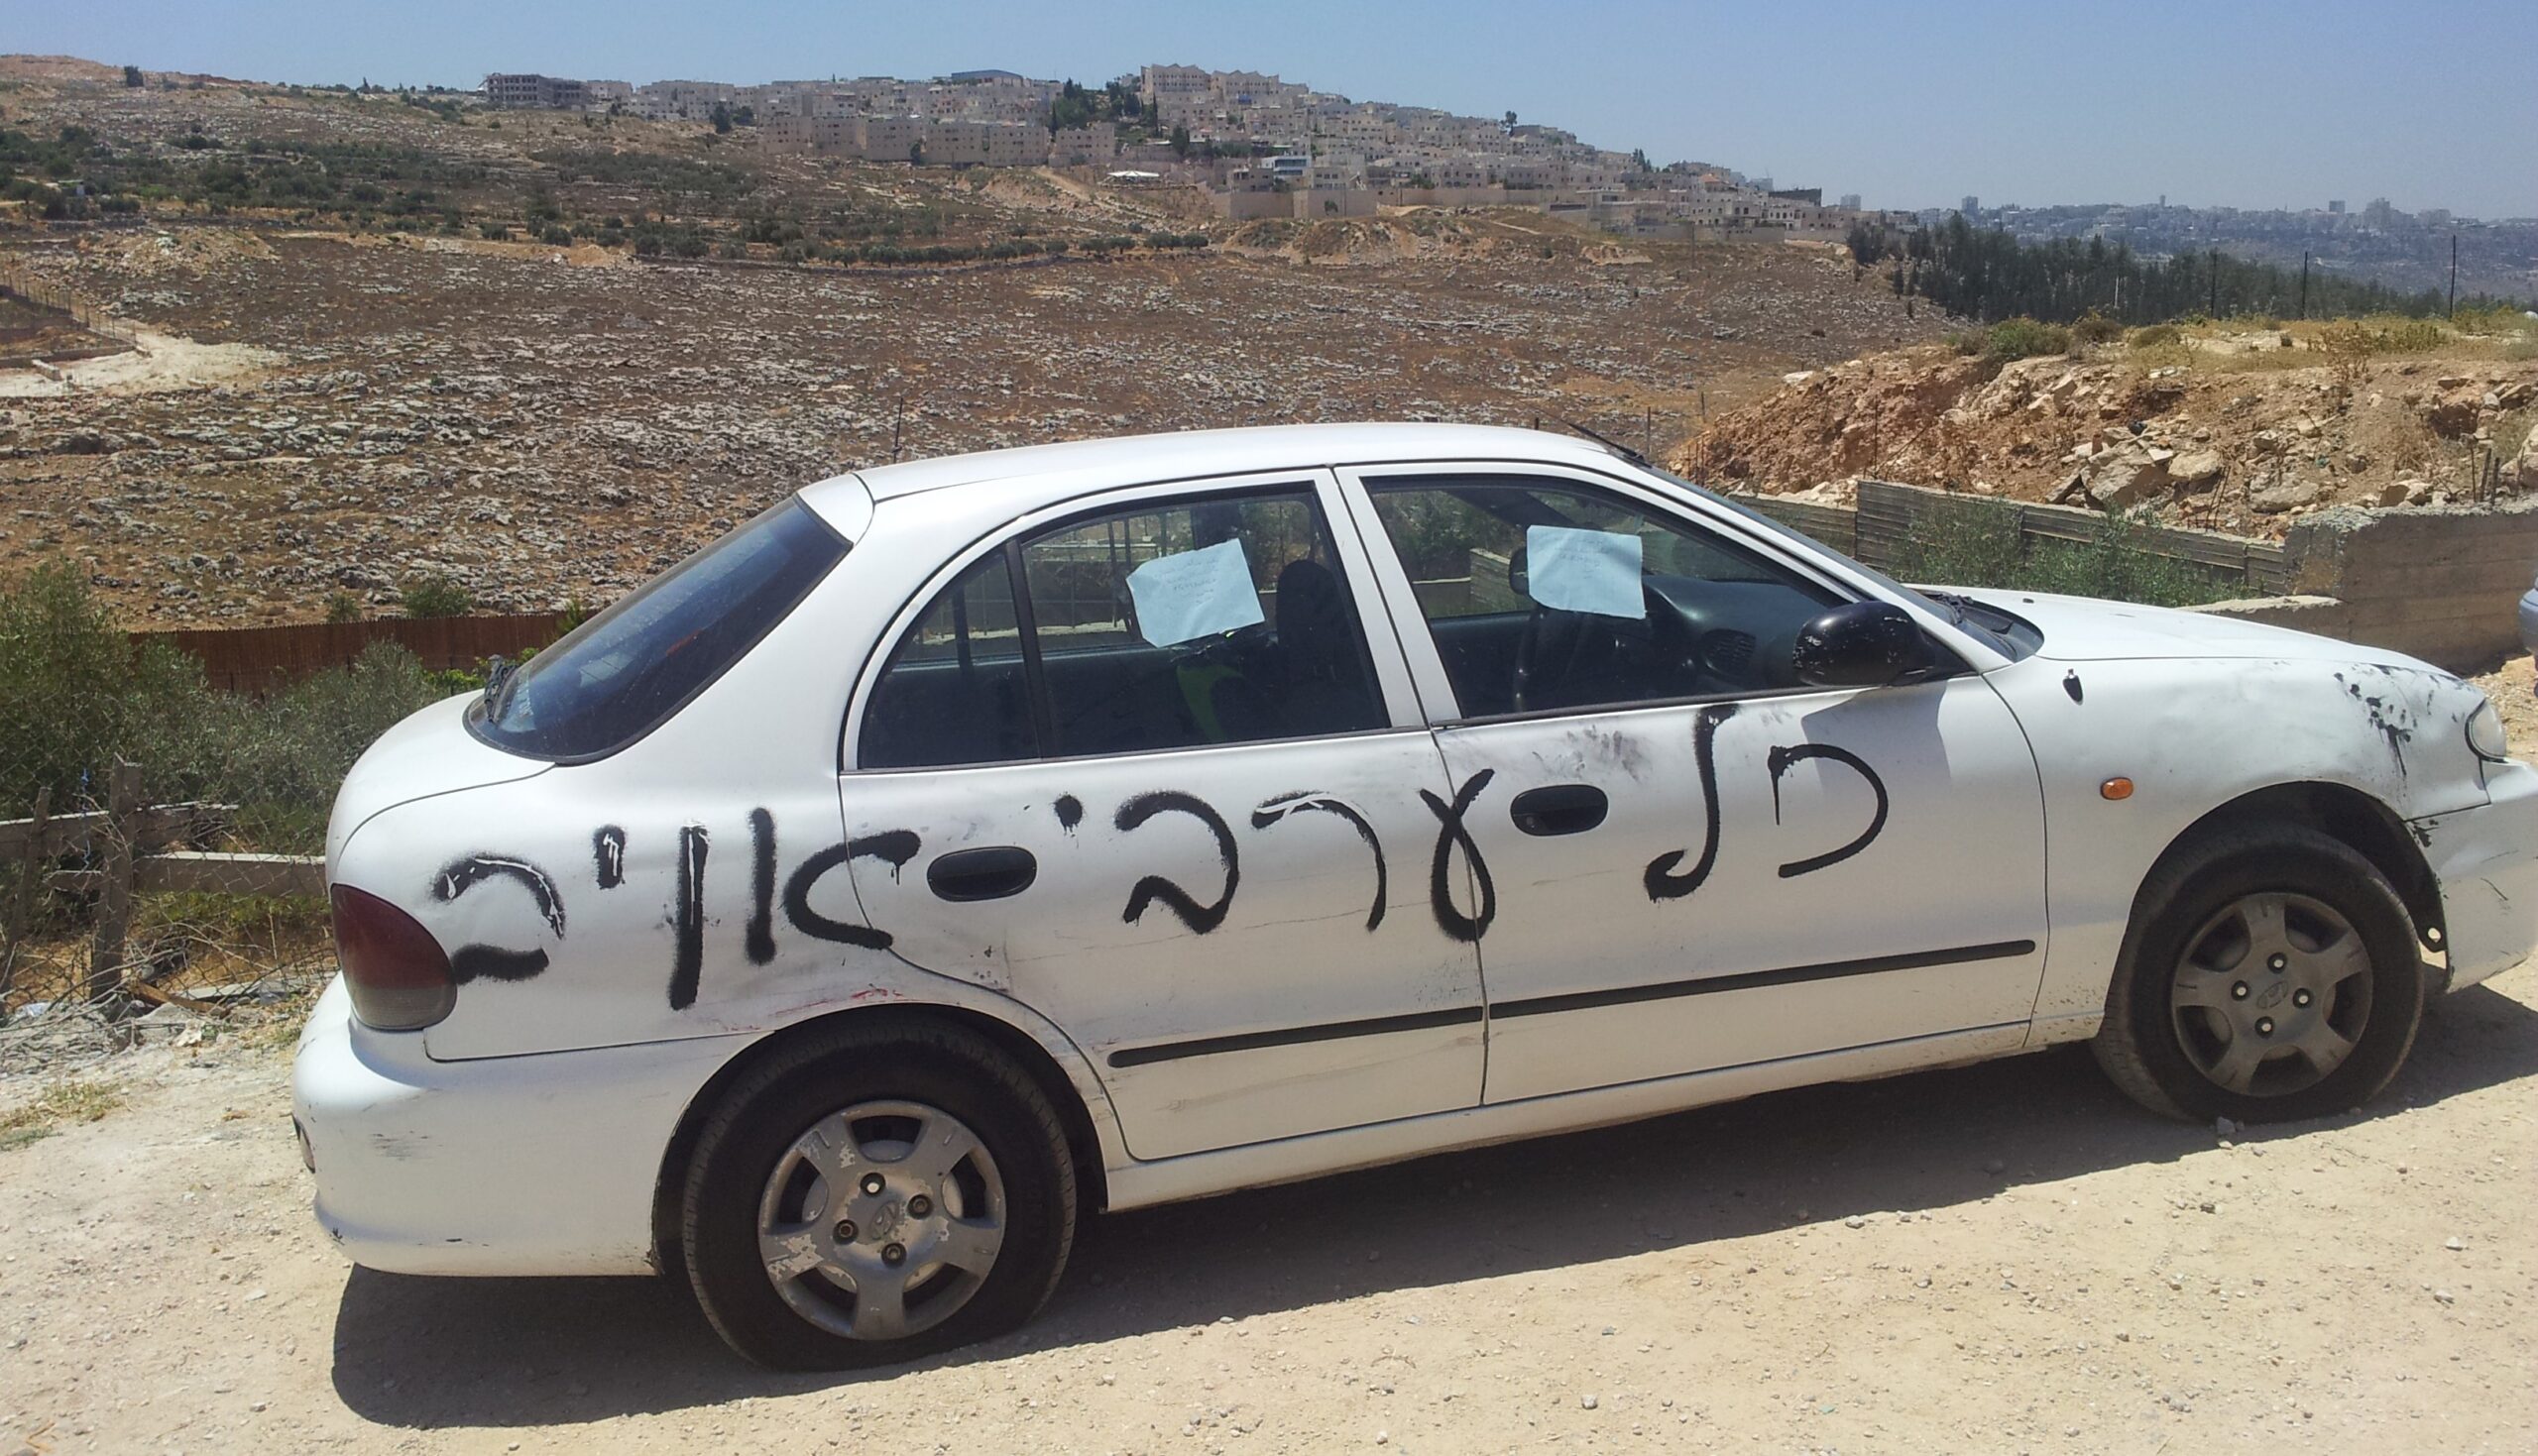 Muhammeds bil där israeliska extremister har punkterat däcken och sprayat ”Alla araber är fienden”. I bakgrunden kan man se en israelisk bosättning.